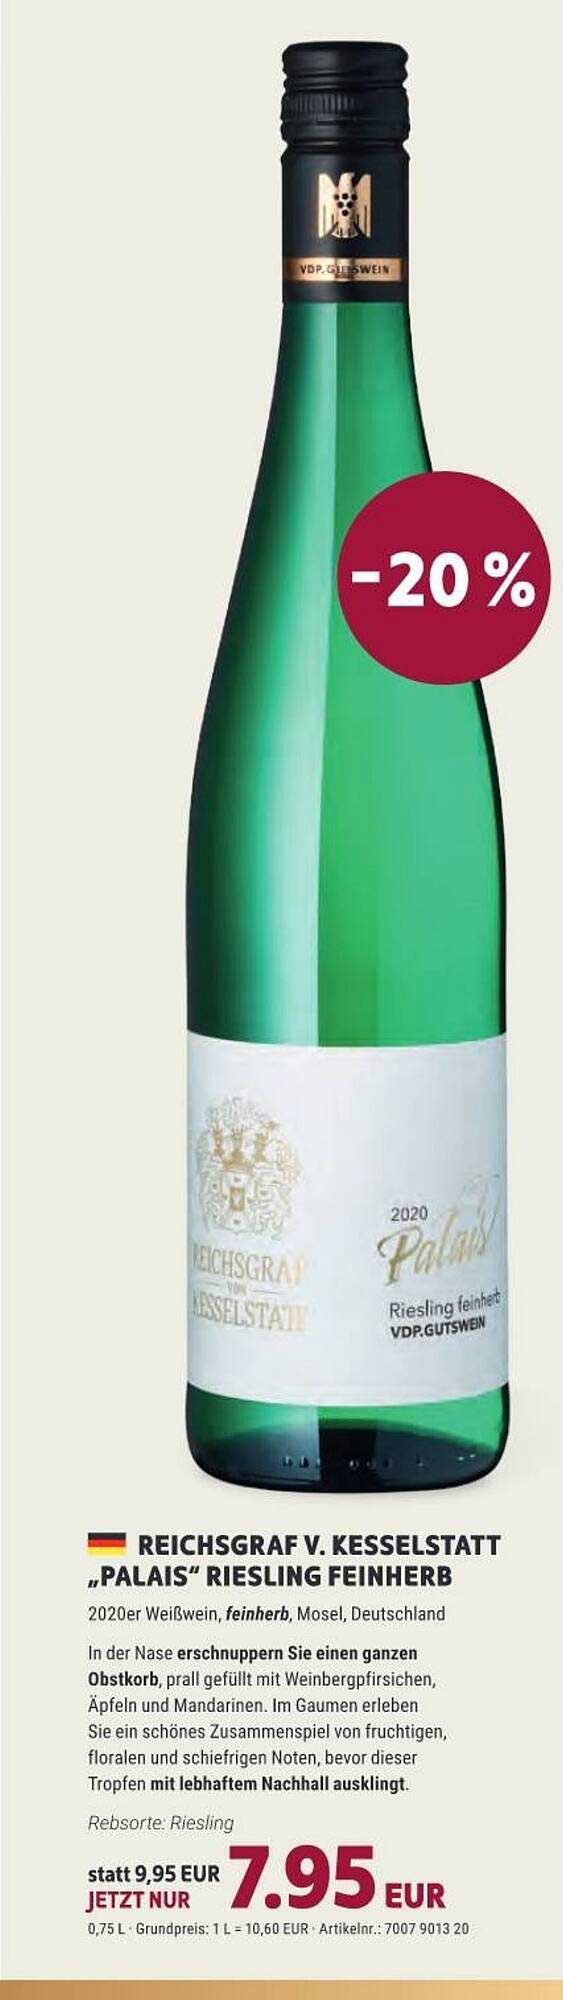 Reichsgraf V. Kesselstatt bei Feinherb Angebot Vino Riesling Weinmarkt „palais“